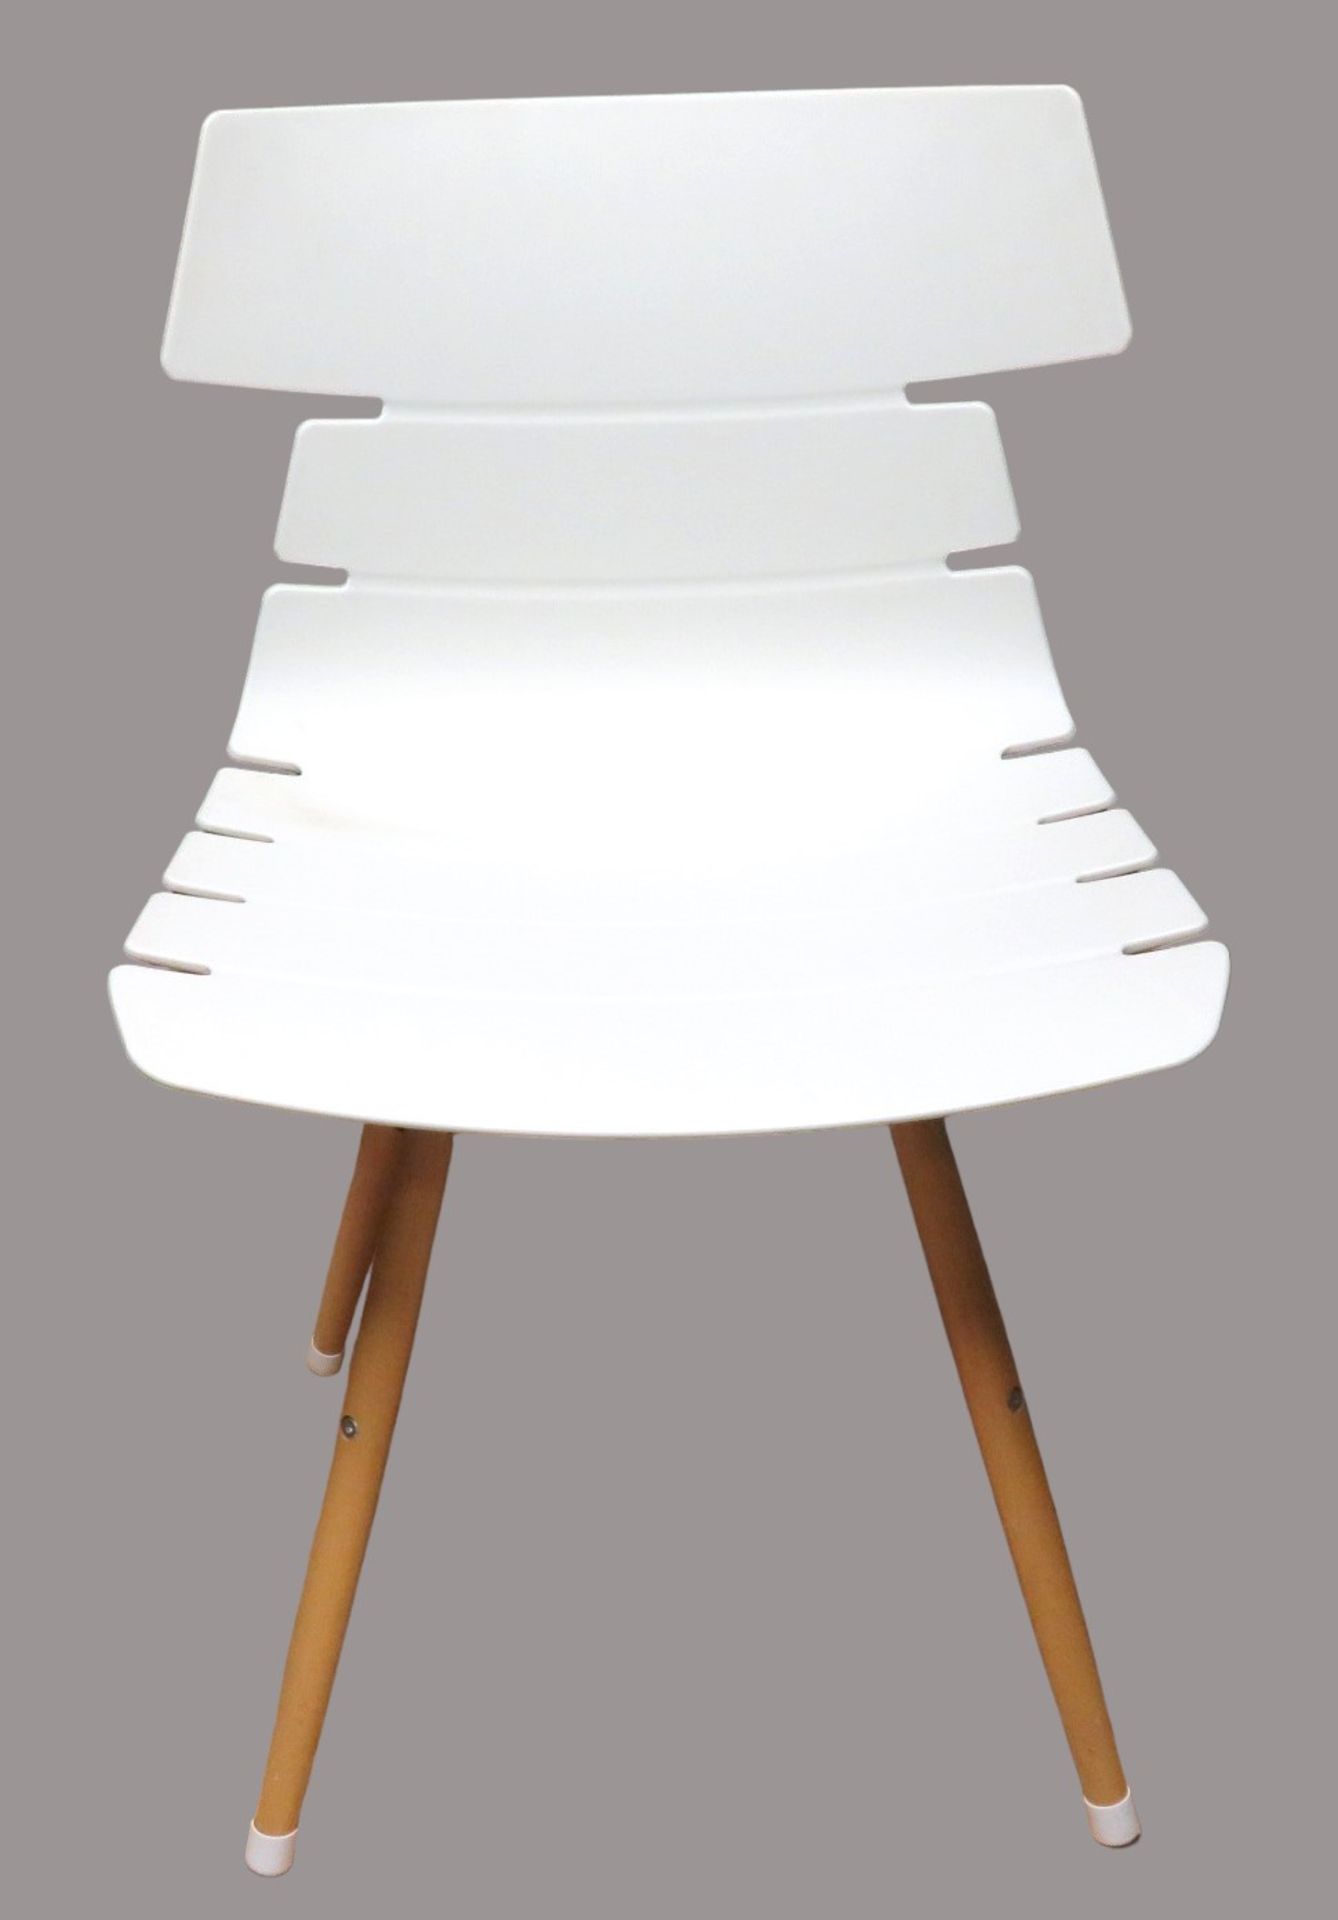 4 Designer Stühle, weiße Kunststoffschale, verdrahtete Holzfüße, 81,5 x 50 x 48 cm.